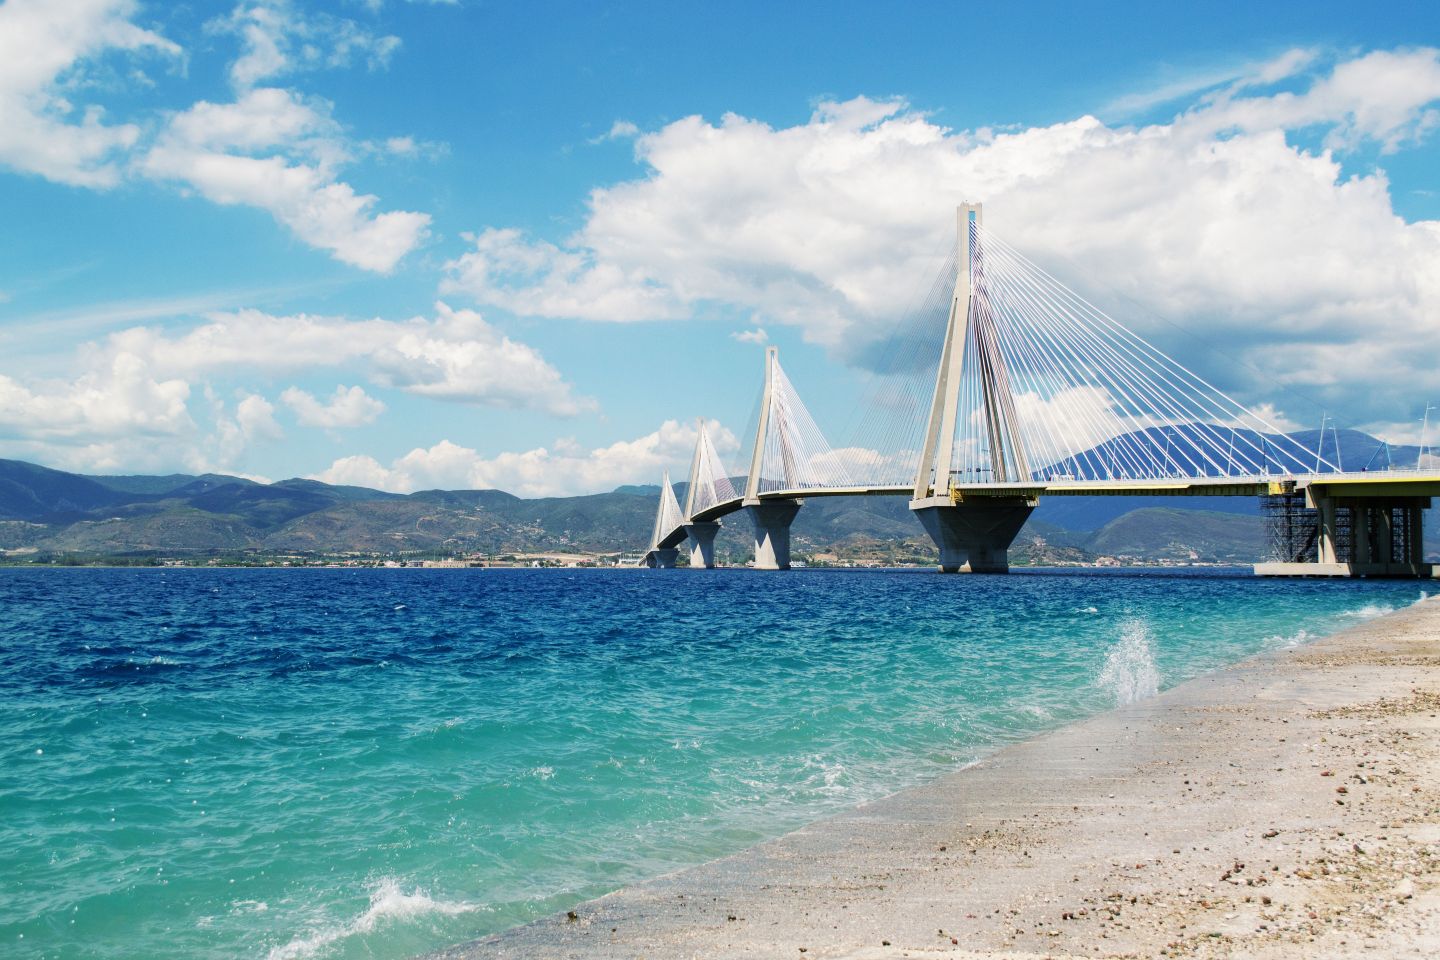  Γέφυρα Ρίου-Αντιρρίου | Στη Λευκάδα με αυτοκίνητο | Lefkada Slow Guide